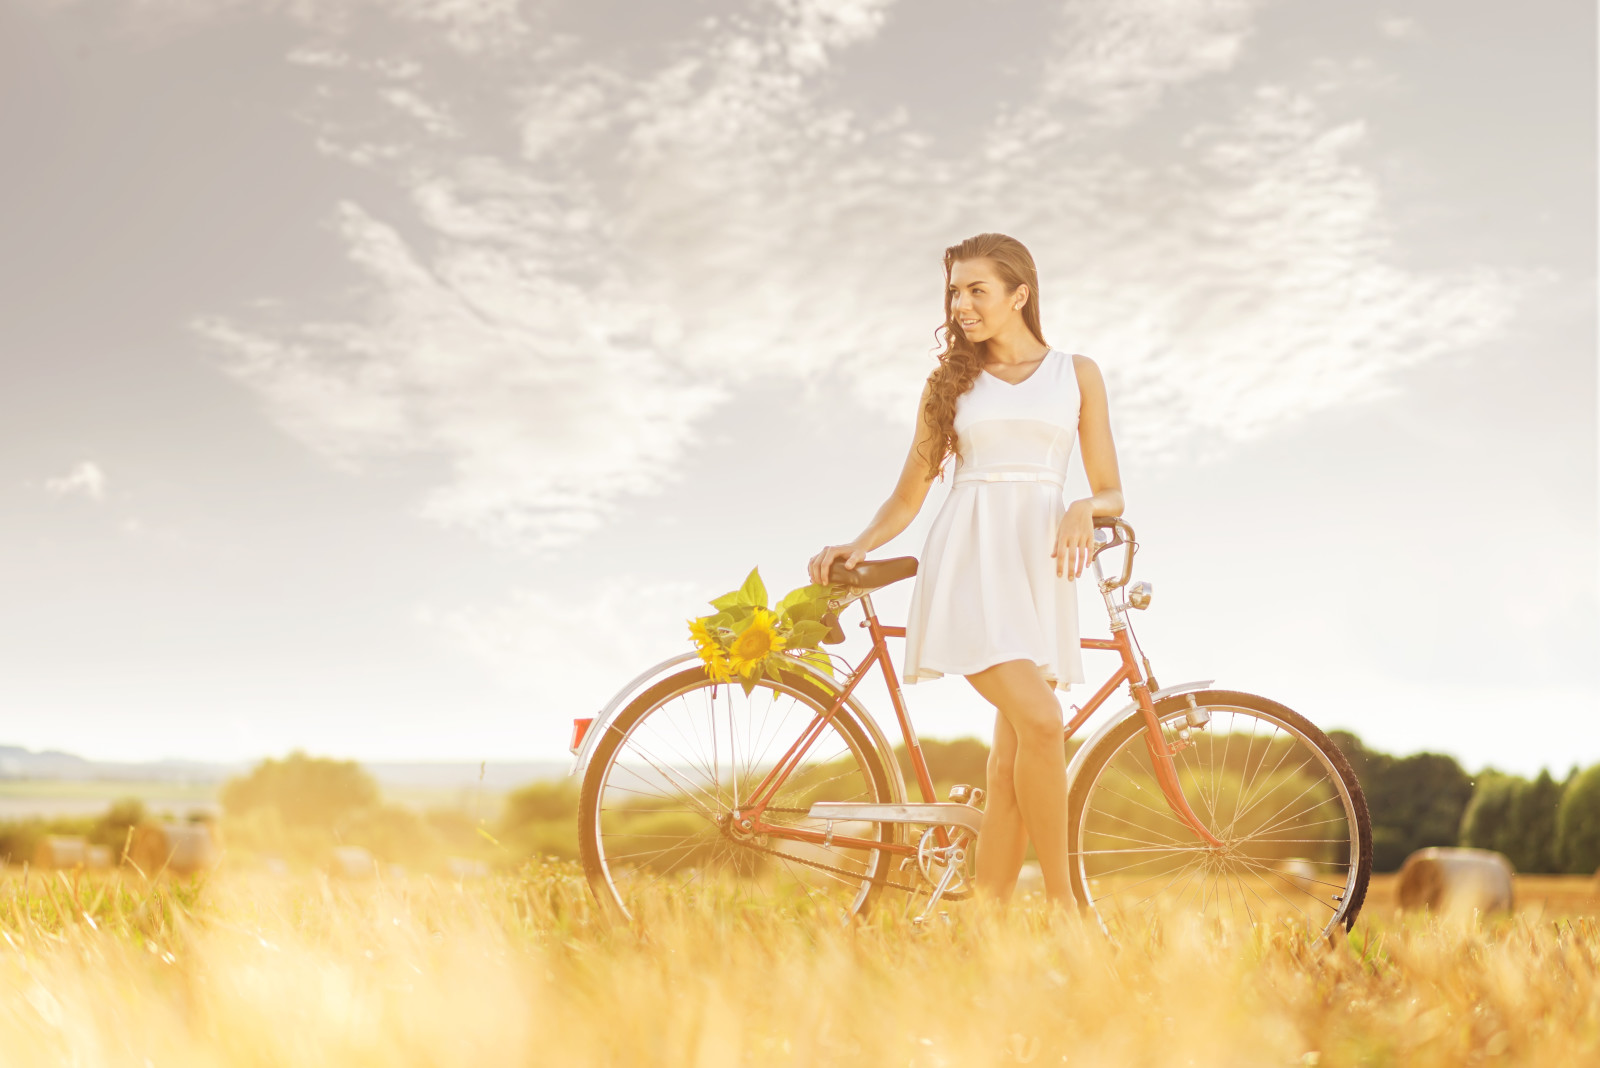 gadis, bidang, sepeda, bunga matahari, jerami